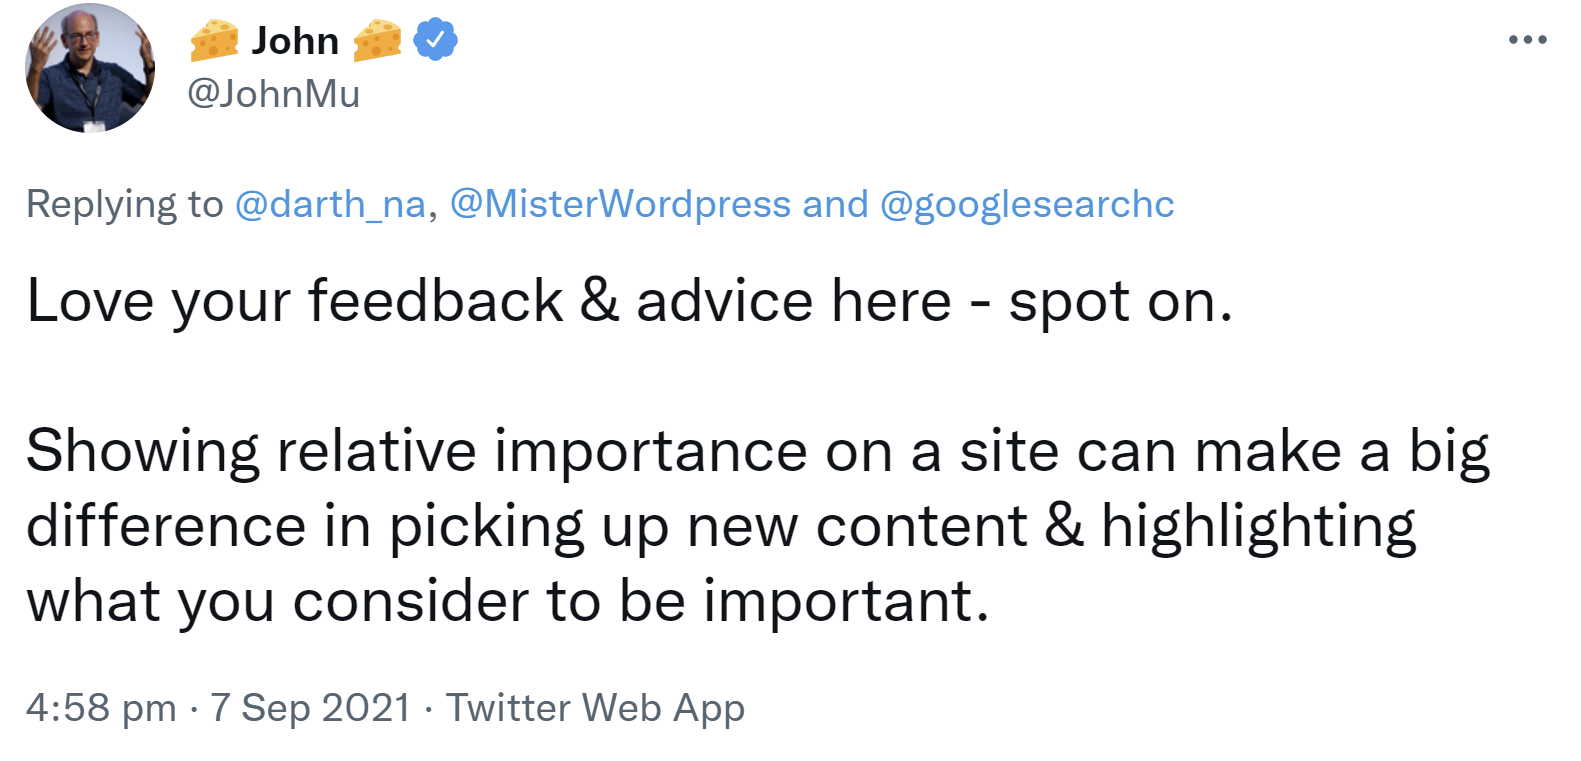 Google: Relative Wichtigkeit von Inhalten auf einer Website zu zeigen, kann die Wartezeit bis zum Crawlen verringern